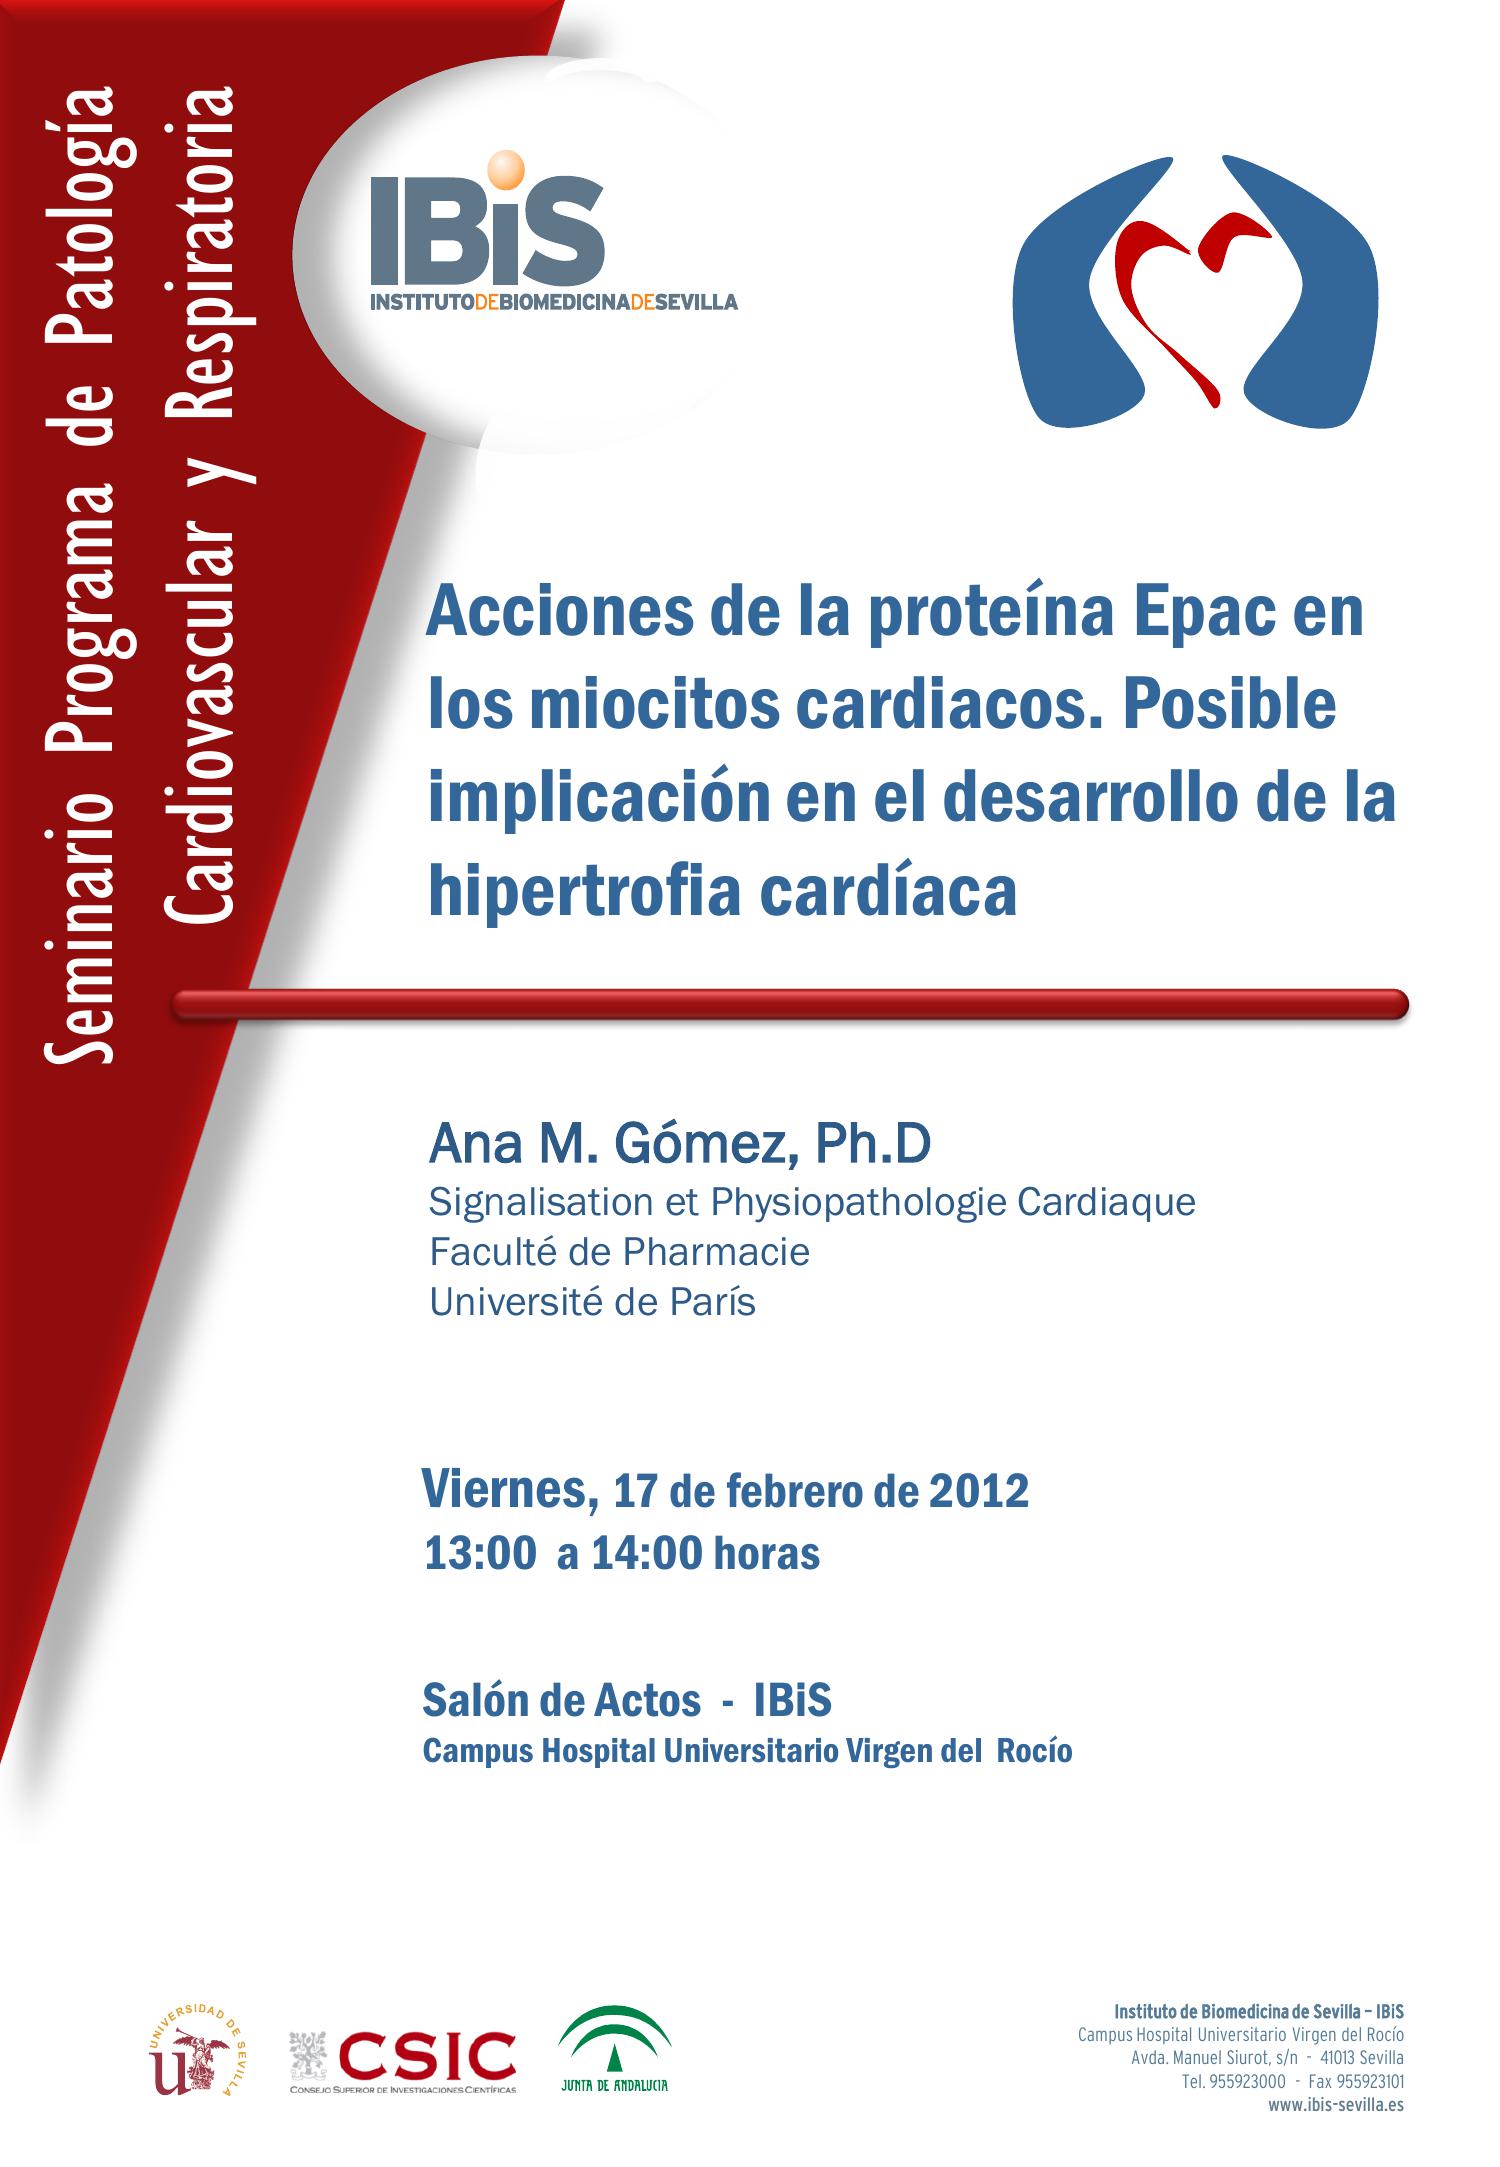 Poster: Acciones de la proteína Epac en los miocitos cardiacos. Posible implicación en el desarrollo de la hipertrofia cardíaca.